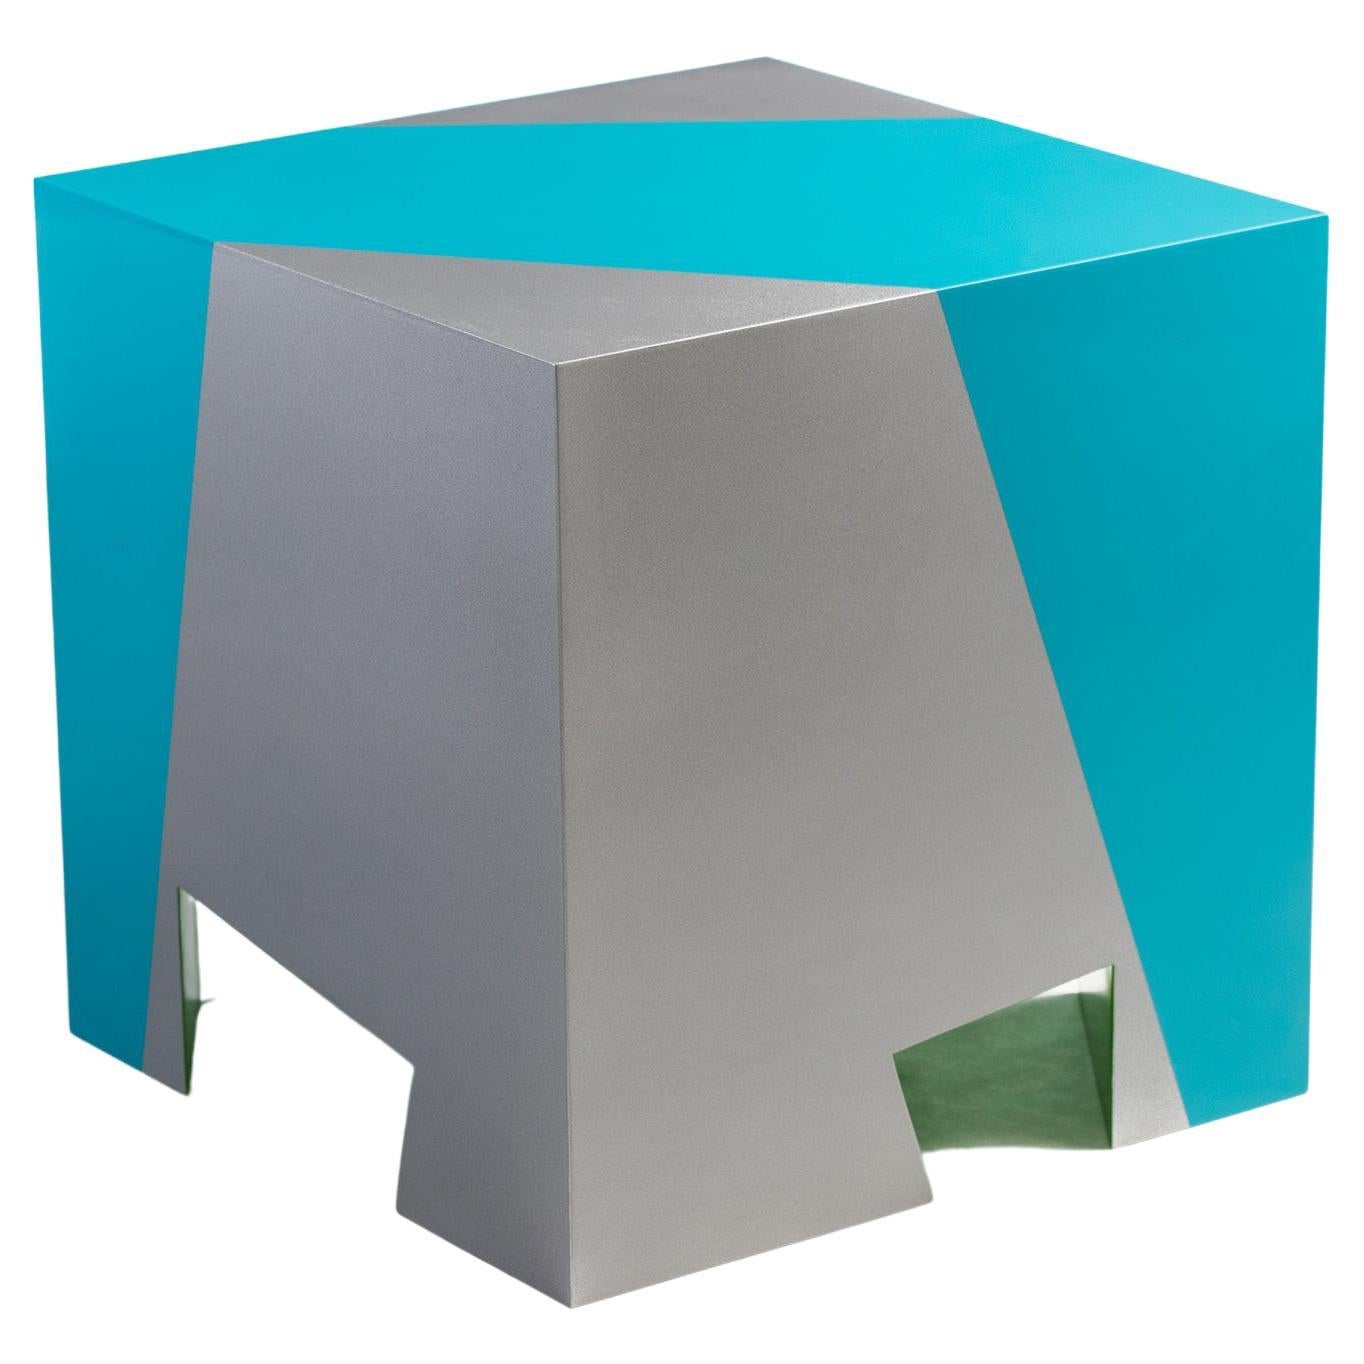 Siège empilable contemporain Sissi bleu et vert en aluminium par Altreforme